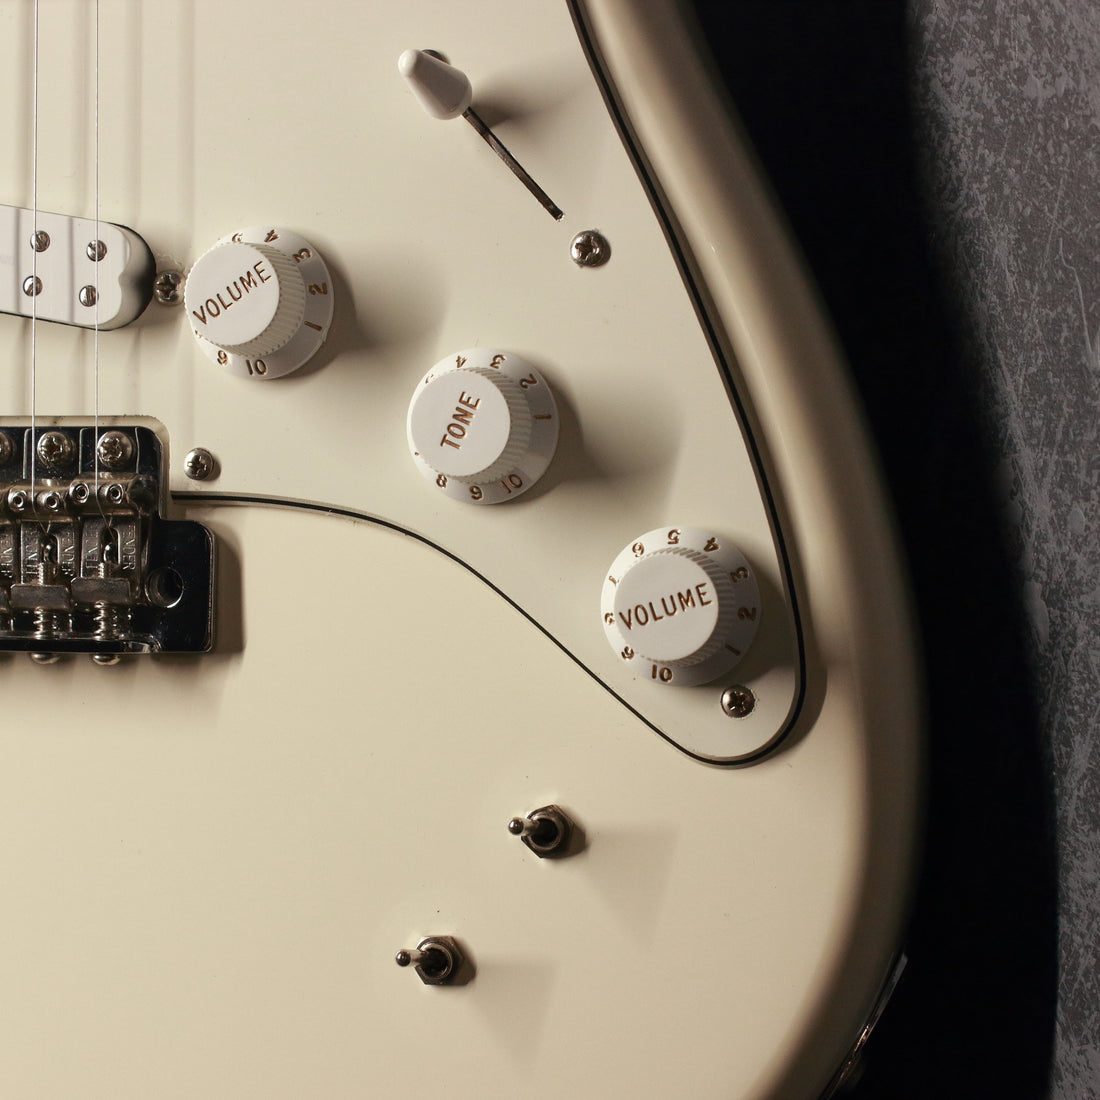 Fender EOB Stratocaster Olympic White 2017